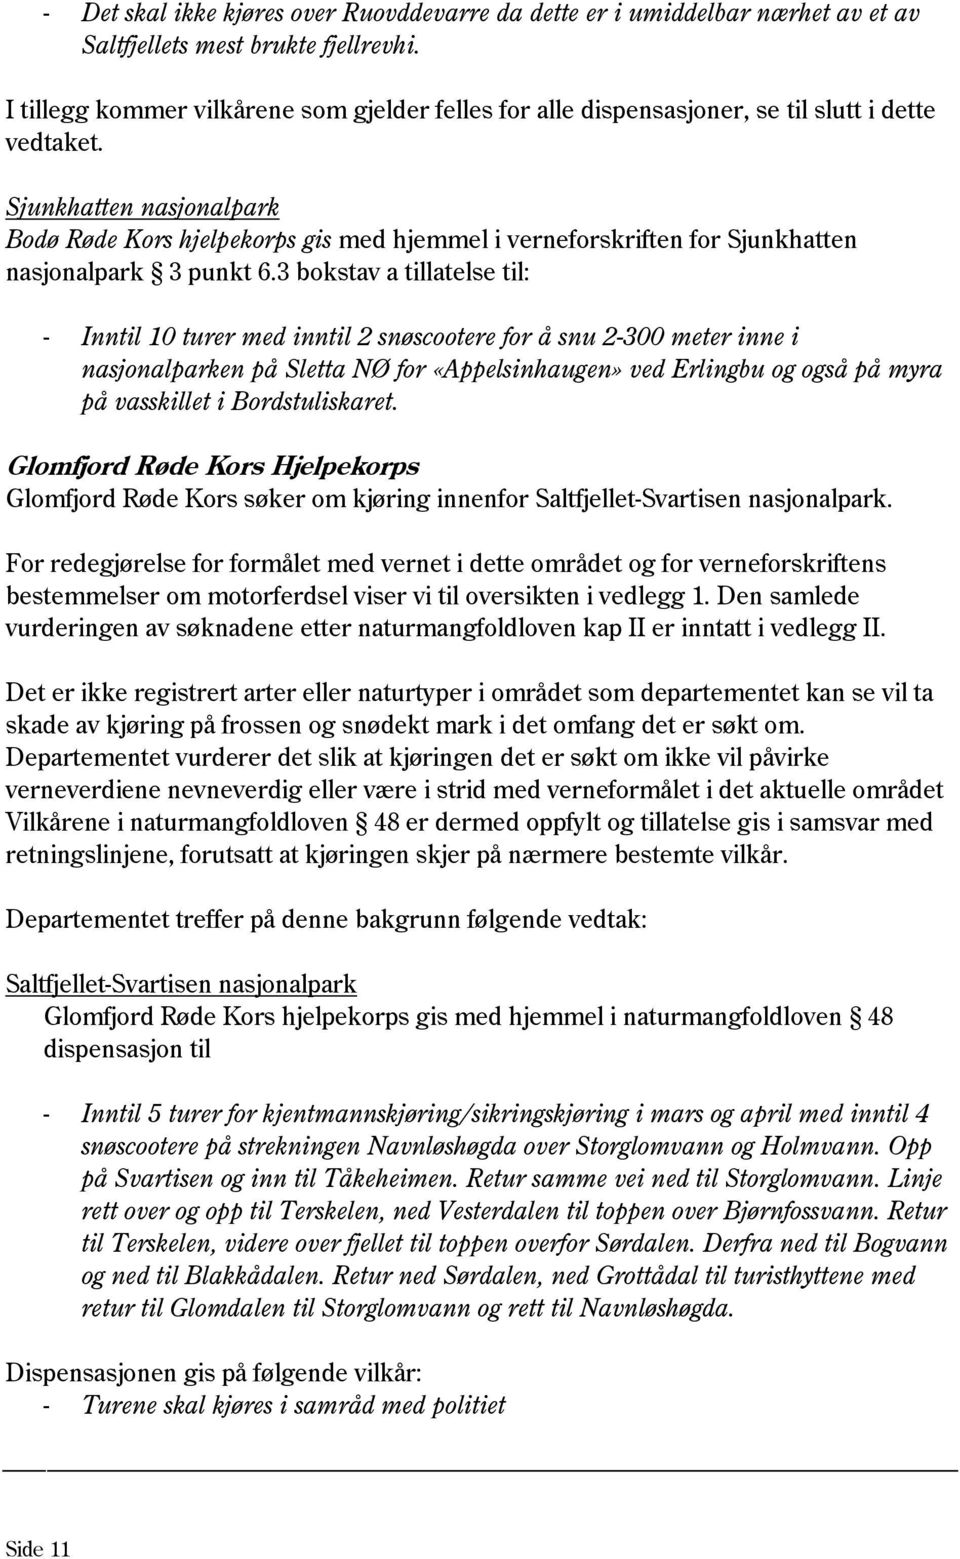 Sjunkhatten nasjonalpark Bodø Røde Kors hjelpekorps gis med hjemmel i verneforskriften for Sjunkhatten nasjonalpark 3 punkt 6.